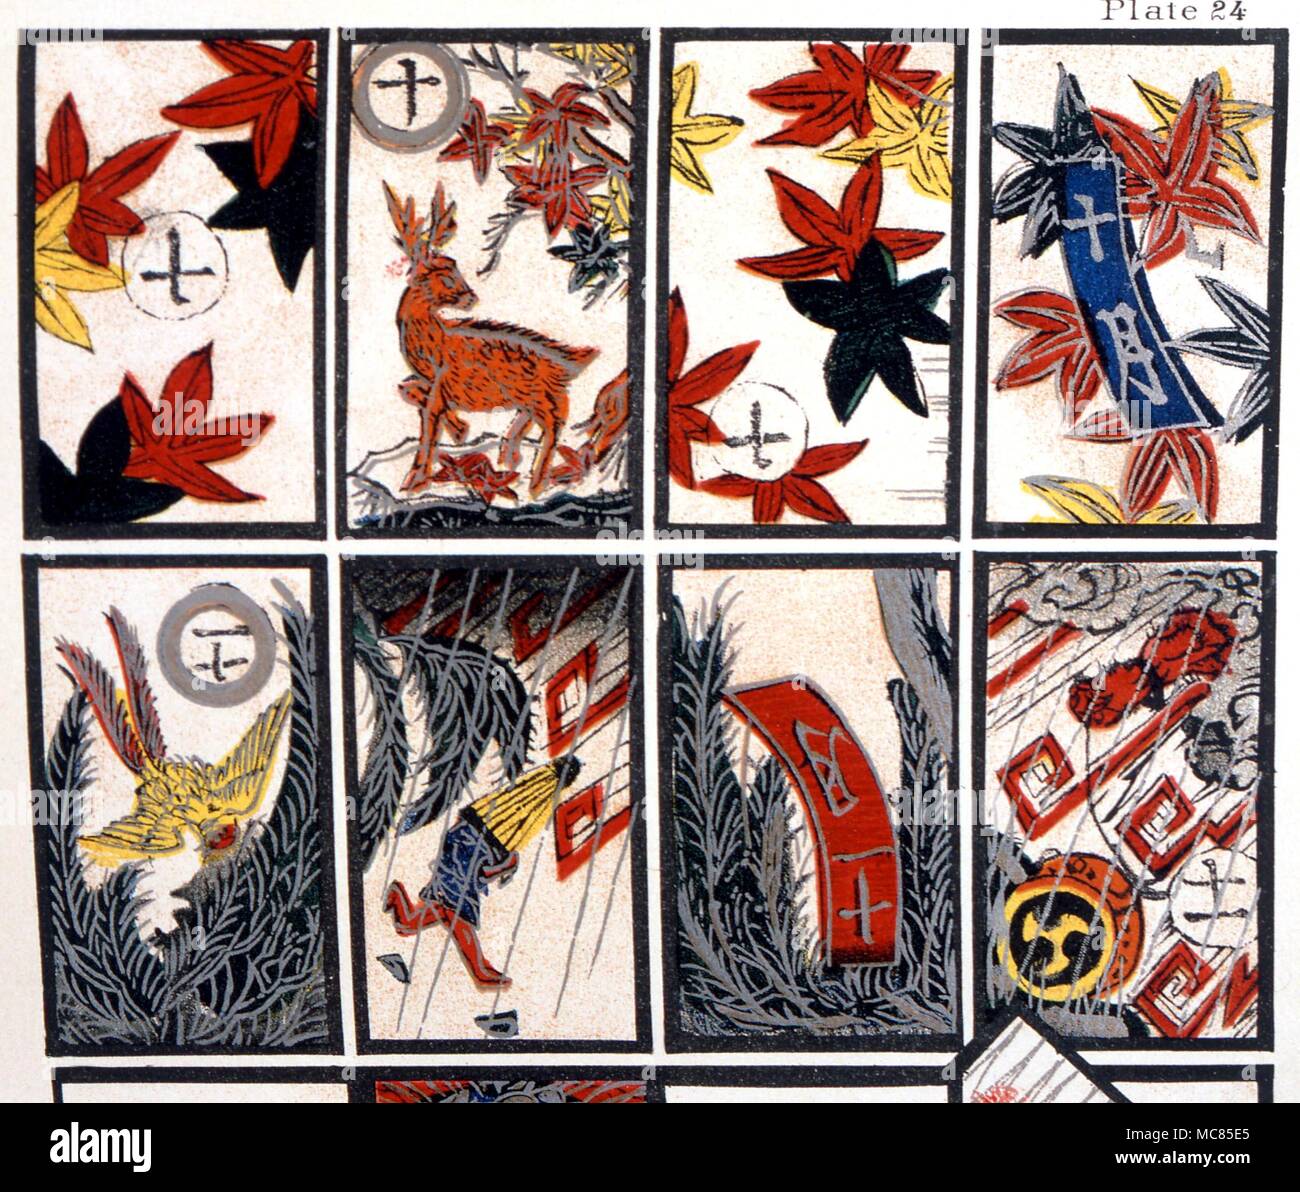 Cartomancy. Japonés jugando a las cartas, cada una representando una semana  del año. Serie de tarjetas litográficas relacionadas con la tradición del  Tarot, desde J,K Van Rensselaer, 'The Devil's libros ilustrados' de